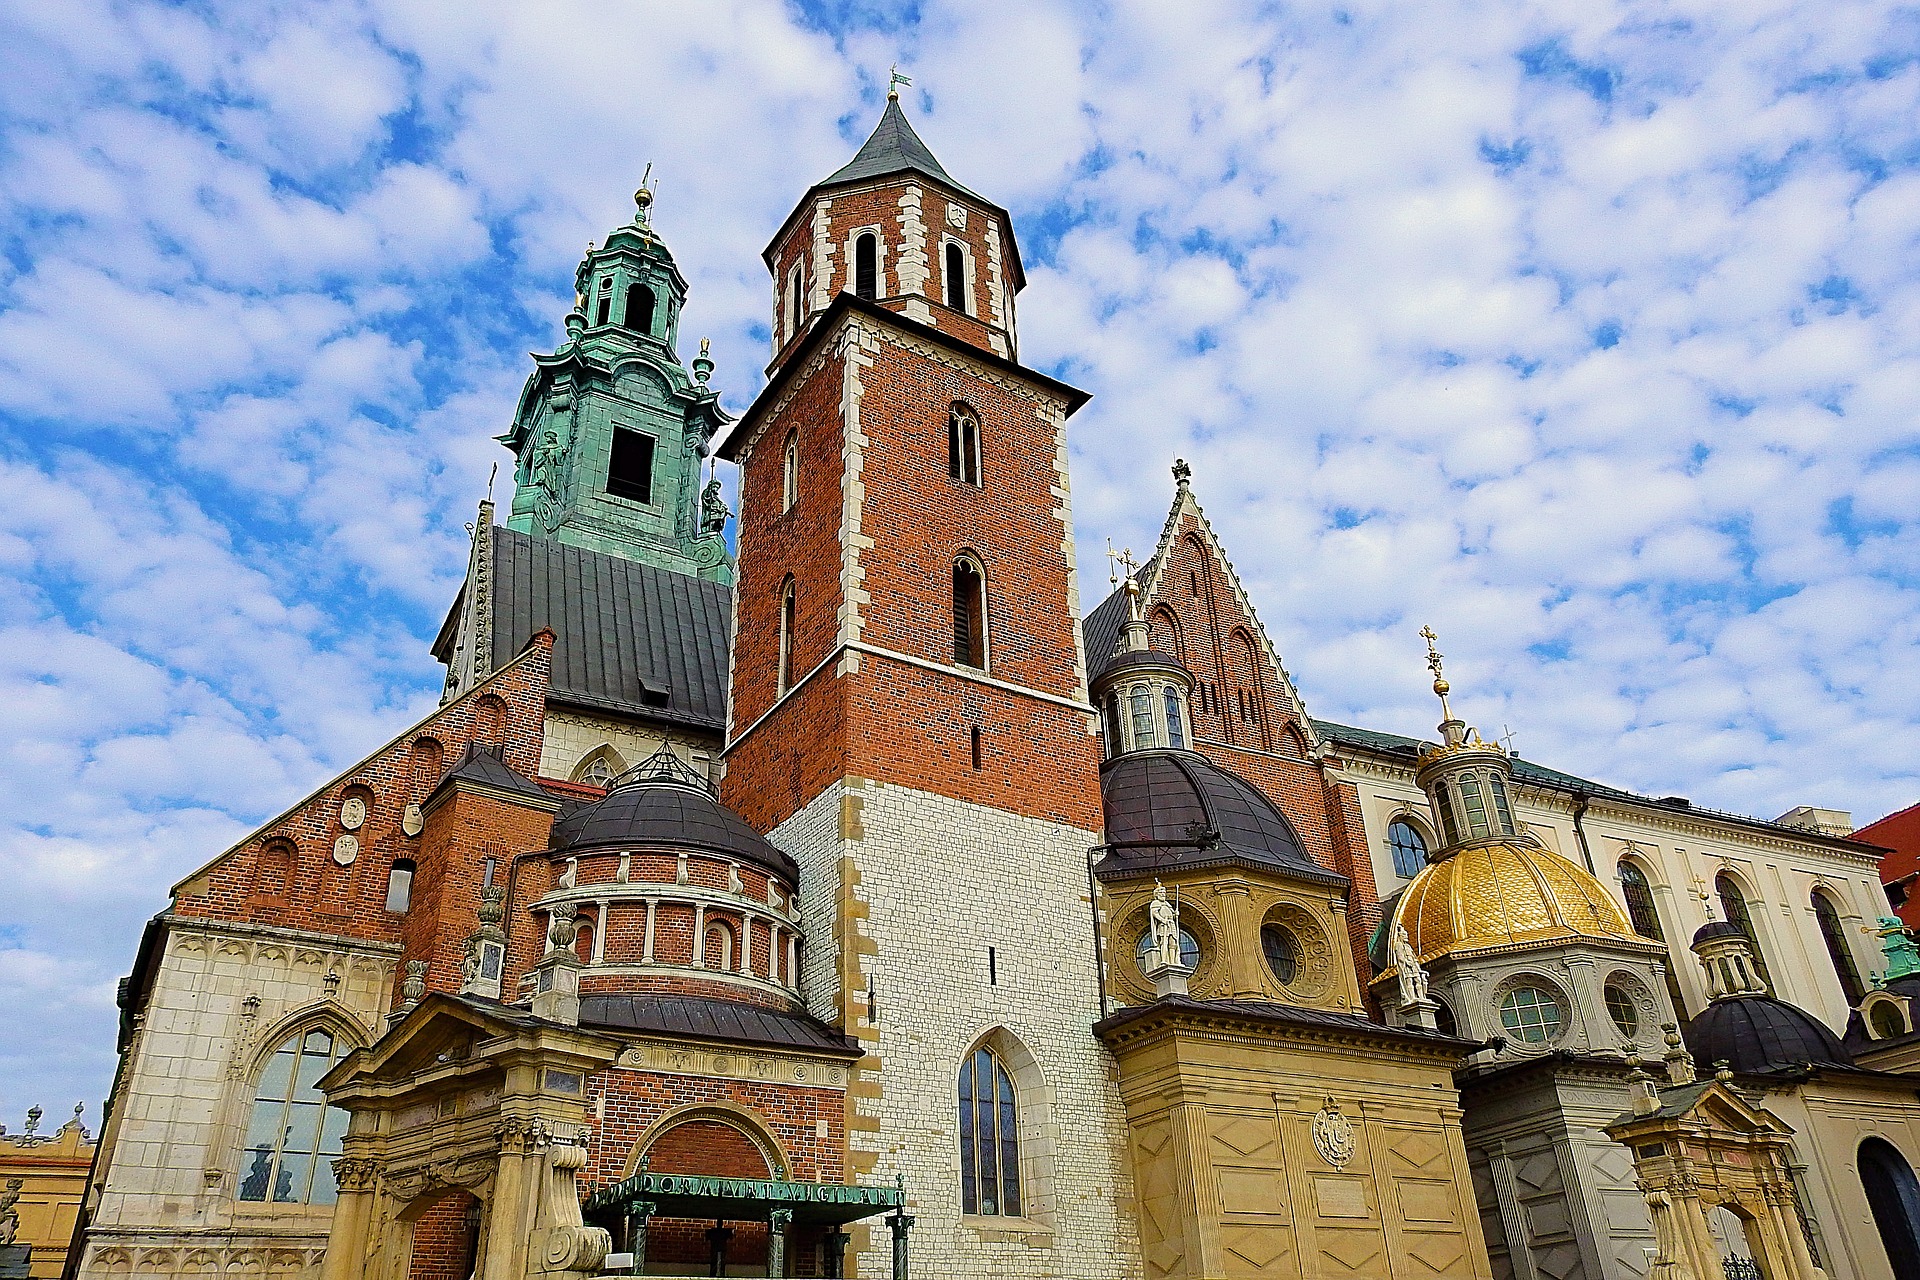 krakow tourist places